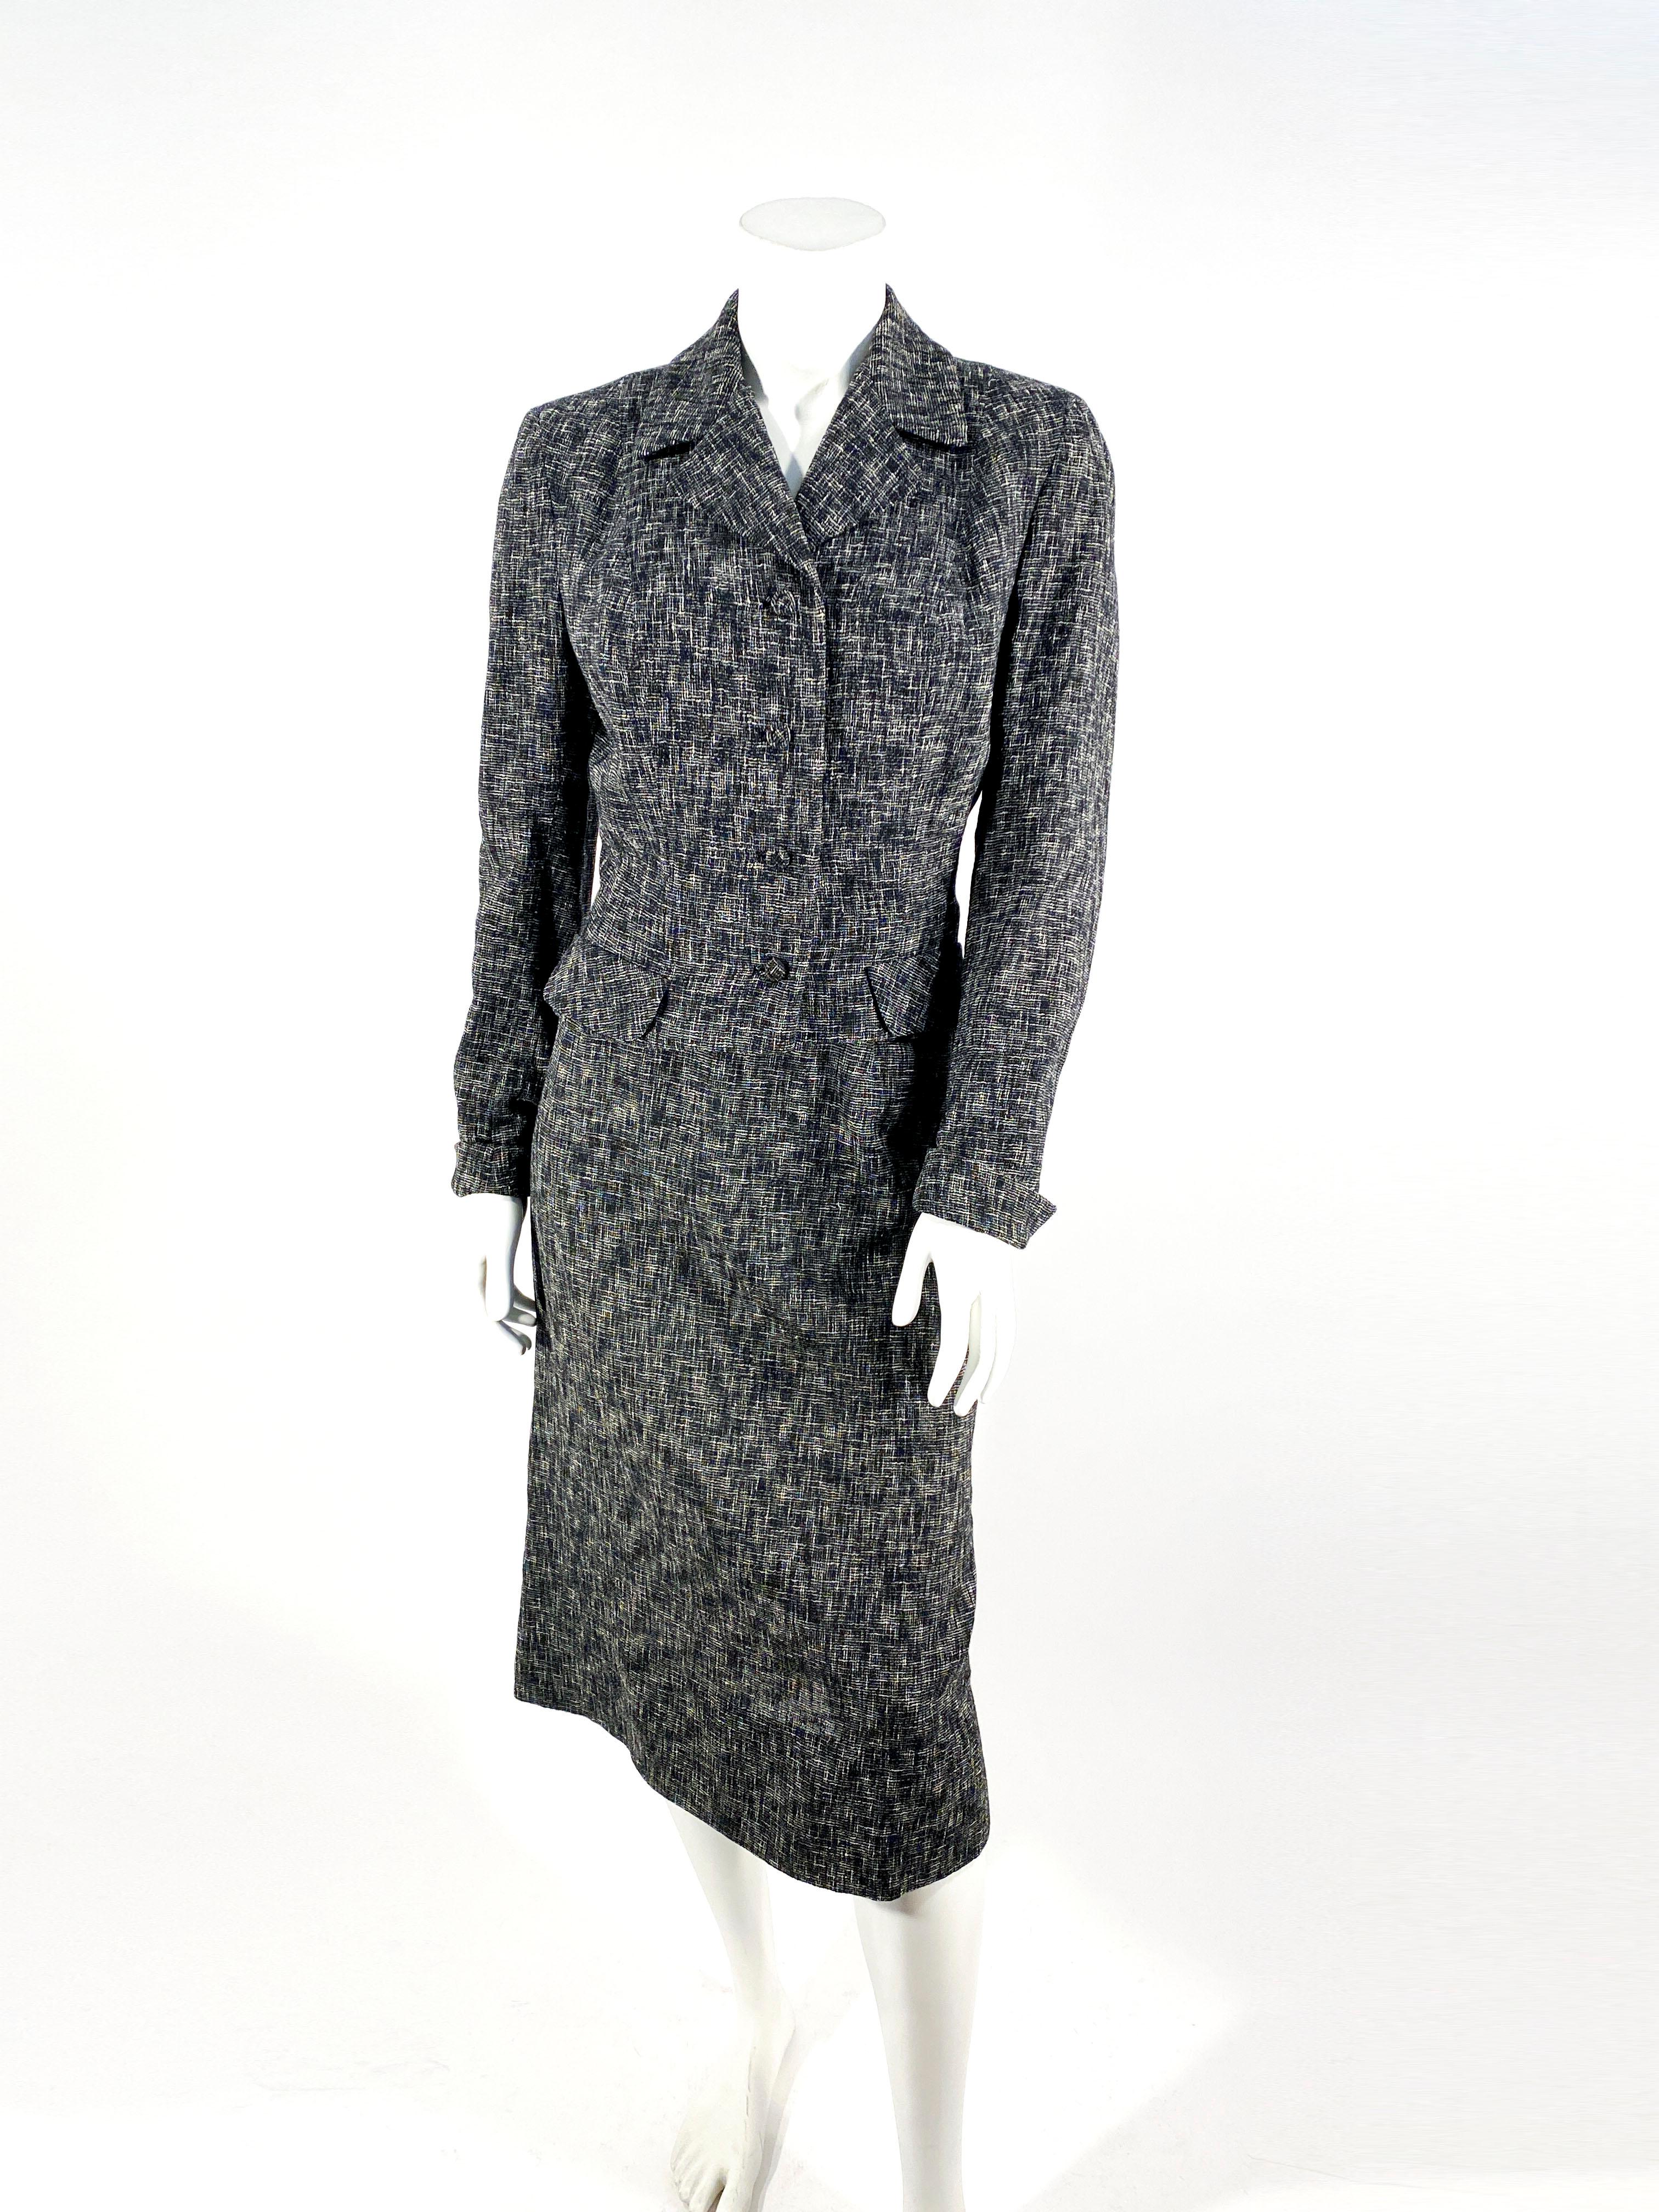 Costume en laine tissée mouchetée noire et grise des années 1950. La veste a une allure ajustée et des boutons recouverts à la main. Le tissu est une laine d'été et les épaules sont légèrement paddées.